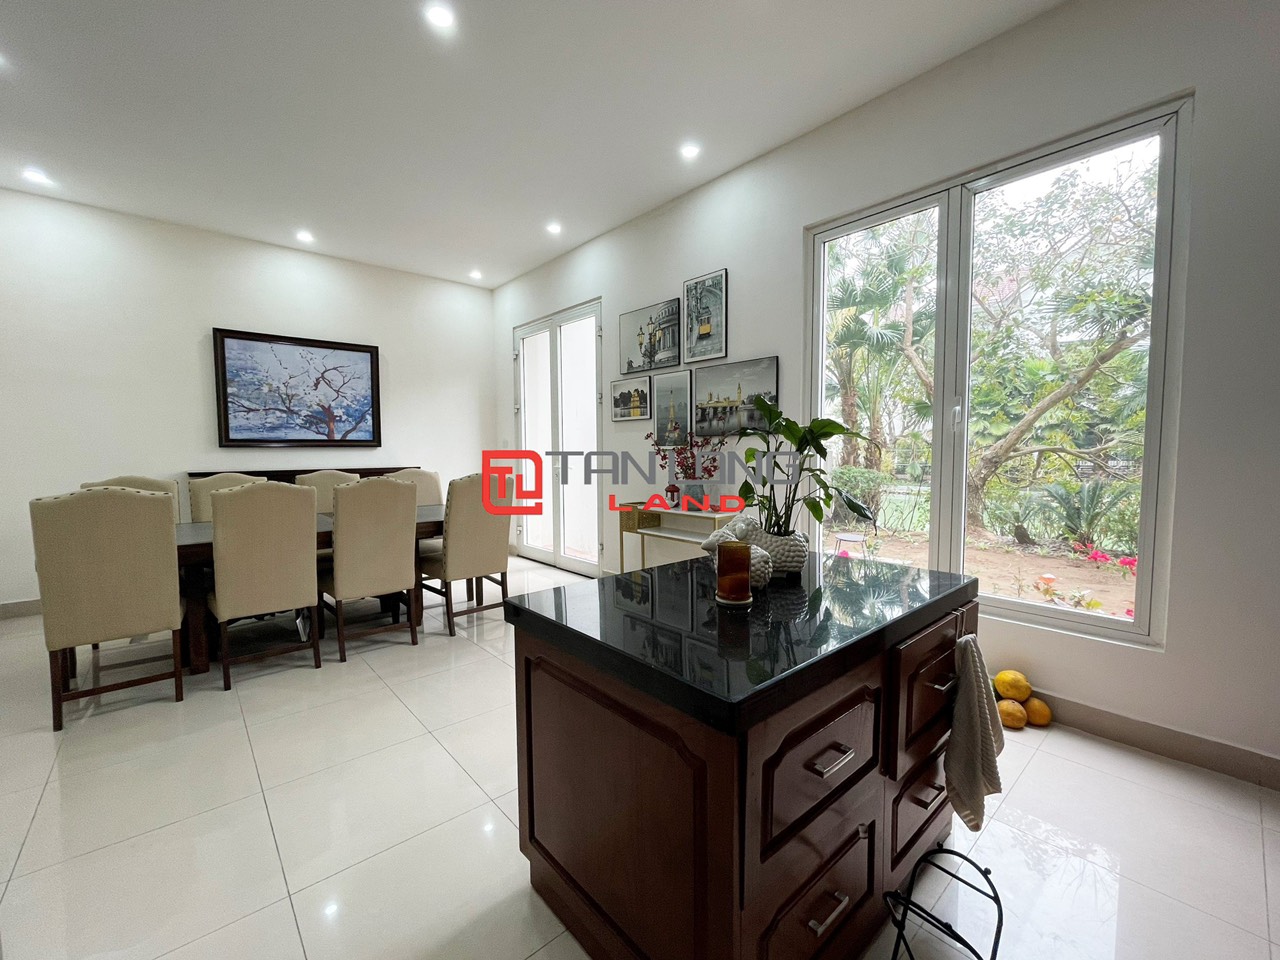 5 Bedrooms Duplex Villa for Rent with Reasonable Price in Vinhomes Riverside Long Bien 3